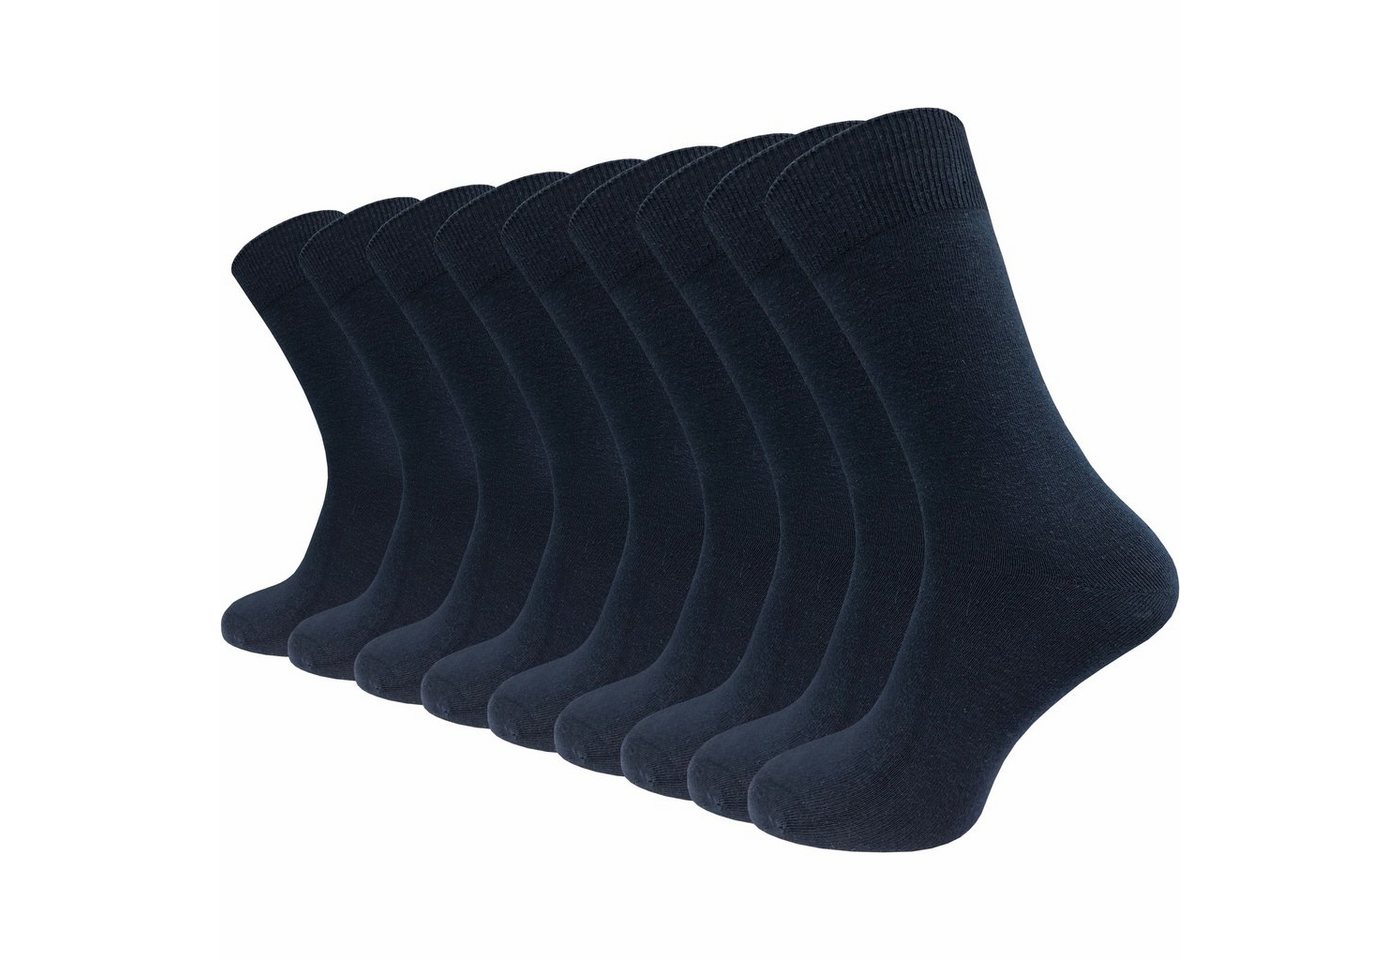 GAWILO Basicsocken für Damen & Herren - 80% hochwertige Baumwolle - mit Komfortbund (9 Paar) atmungsaktive, weiche Baumwolle - ohne Naht - in blau, grau & natur von GAWILO